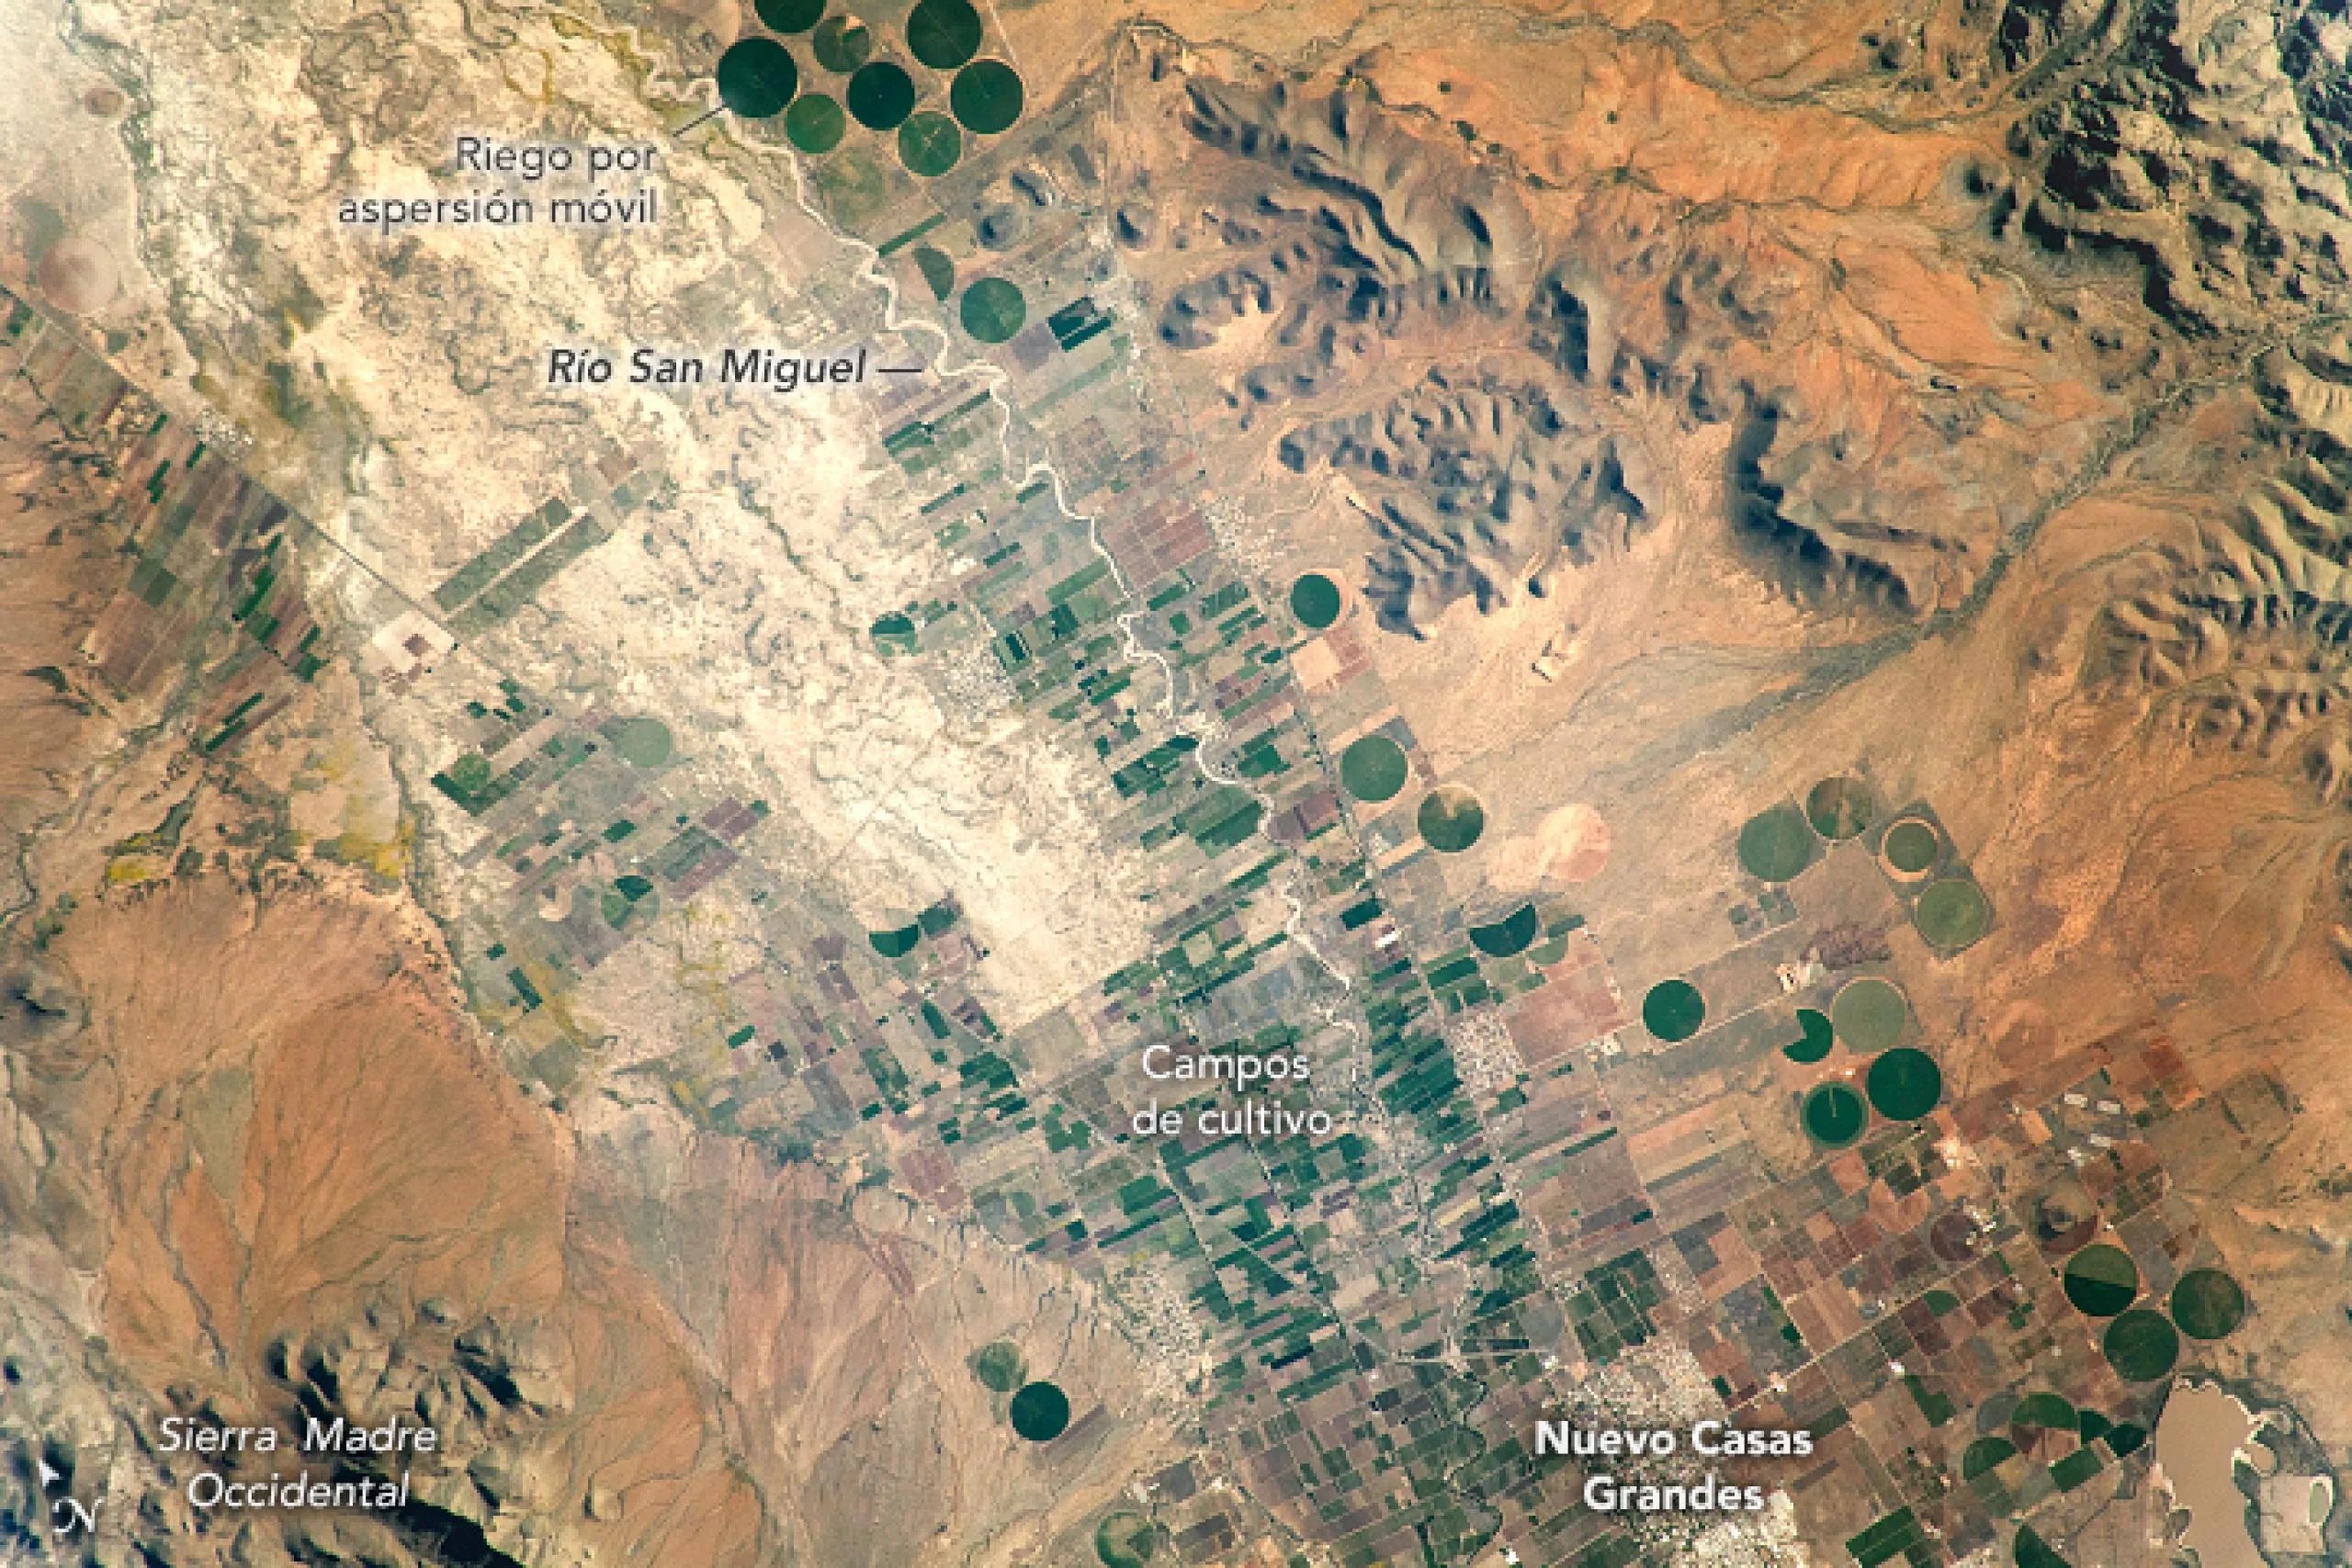 Imagen satelital de actividad agrícola en el desierto mexicano de Chihuahua